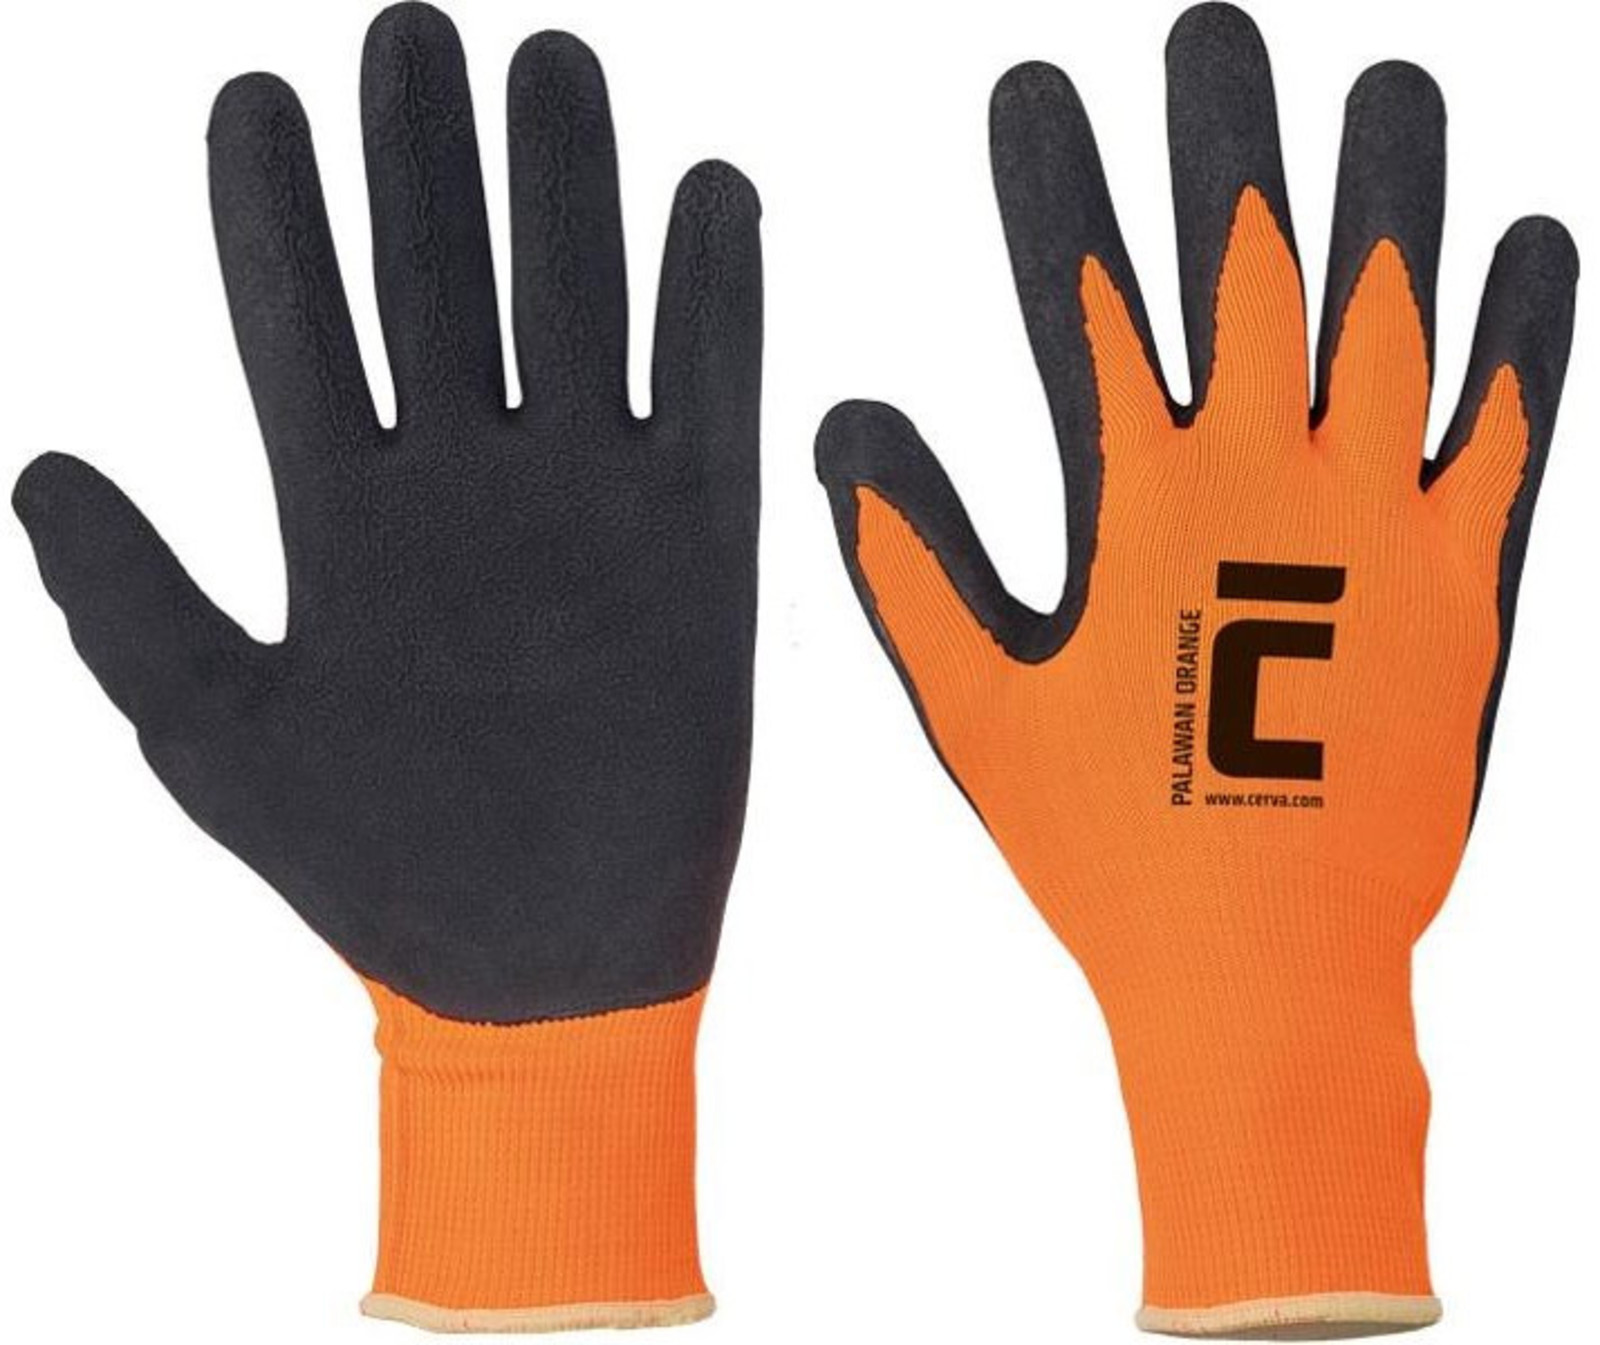 Pracovné rukavice Cerva Palawan - veľkosť: 7/S, farba: oranžová